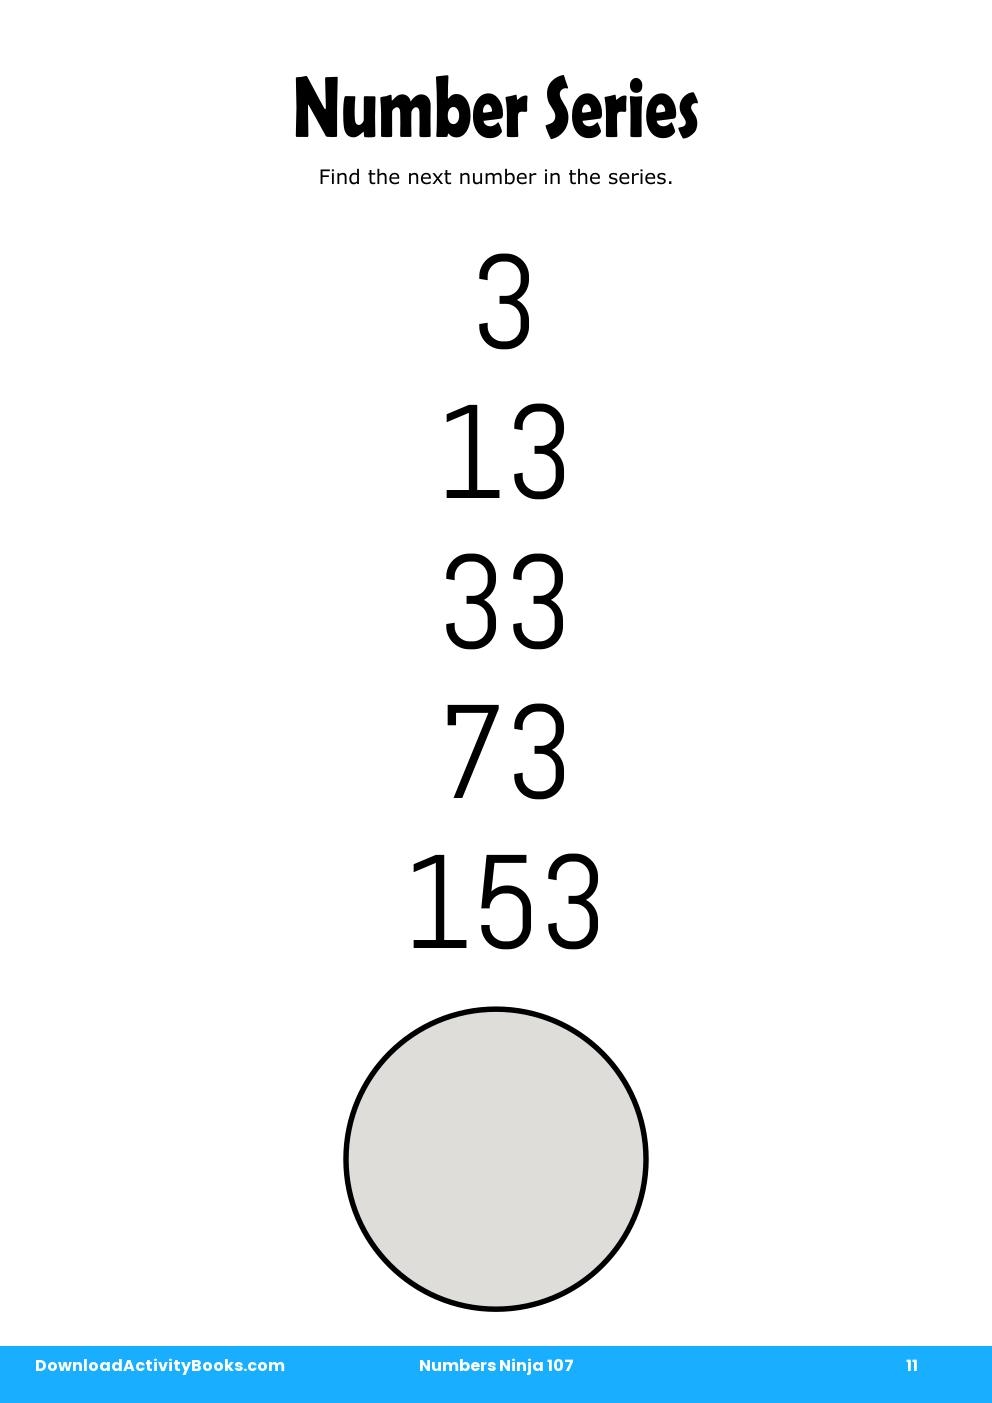 Number Series in Numbers Ninja 107